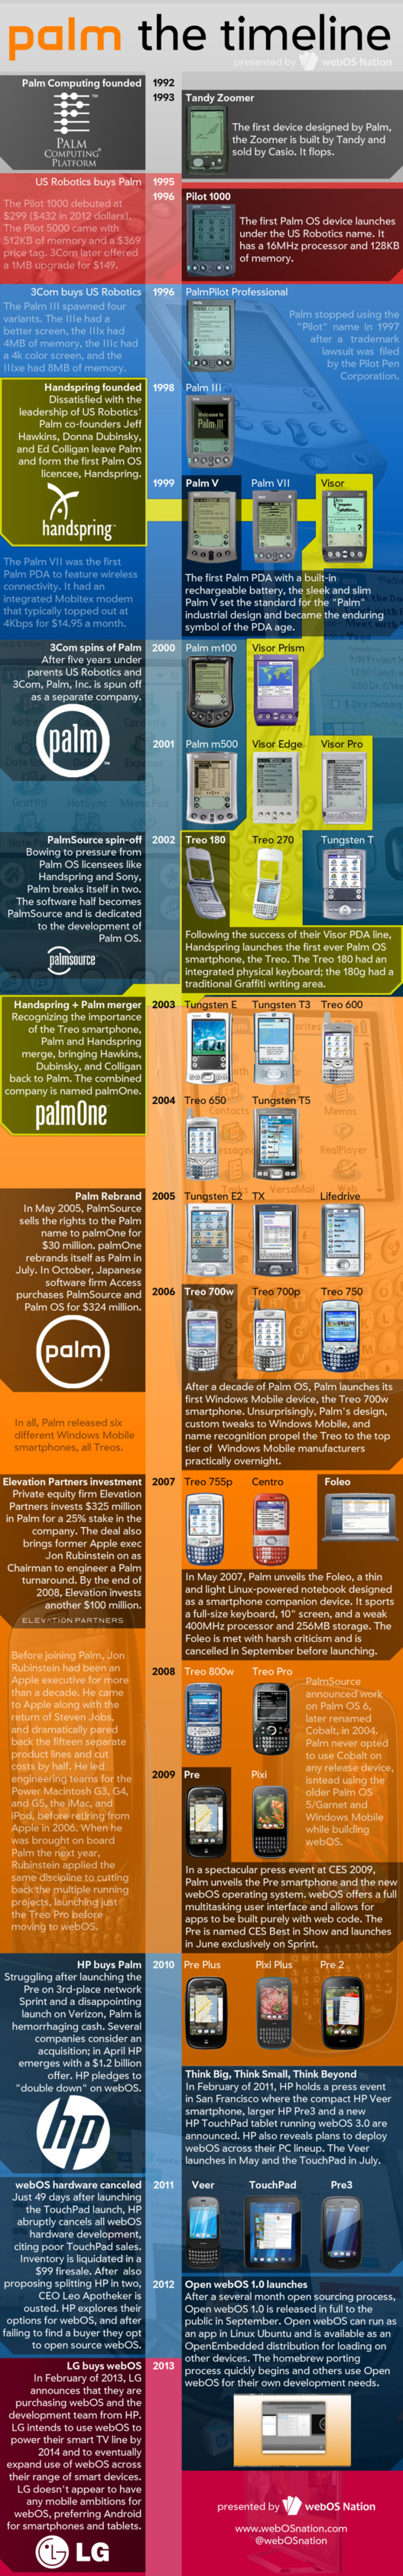 Palm de 1992 à 2013 en 1 image